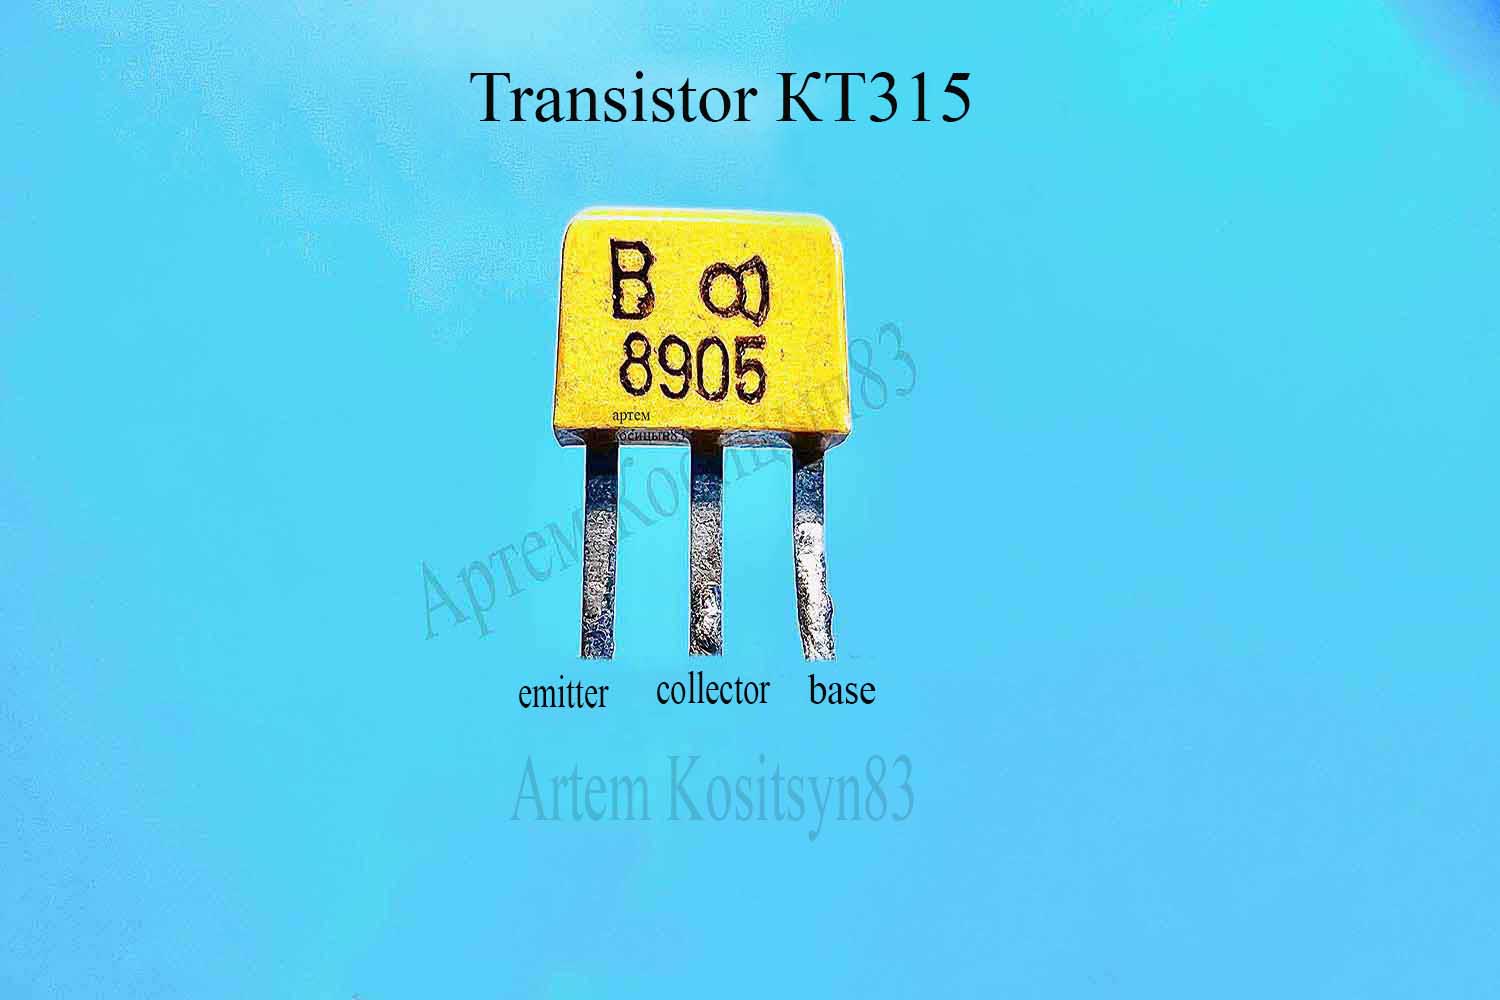 Подробнее о статье Transistor KT315.Characteristics and schematics on KT315